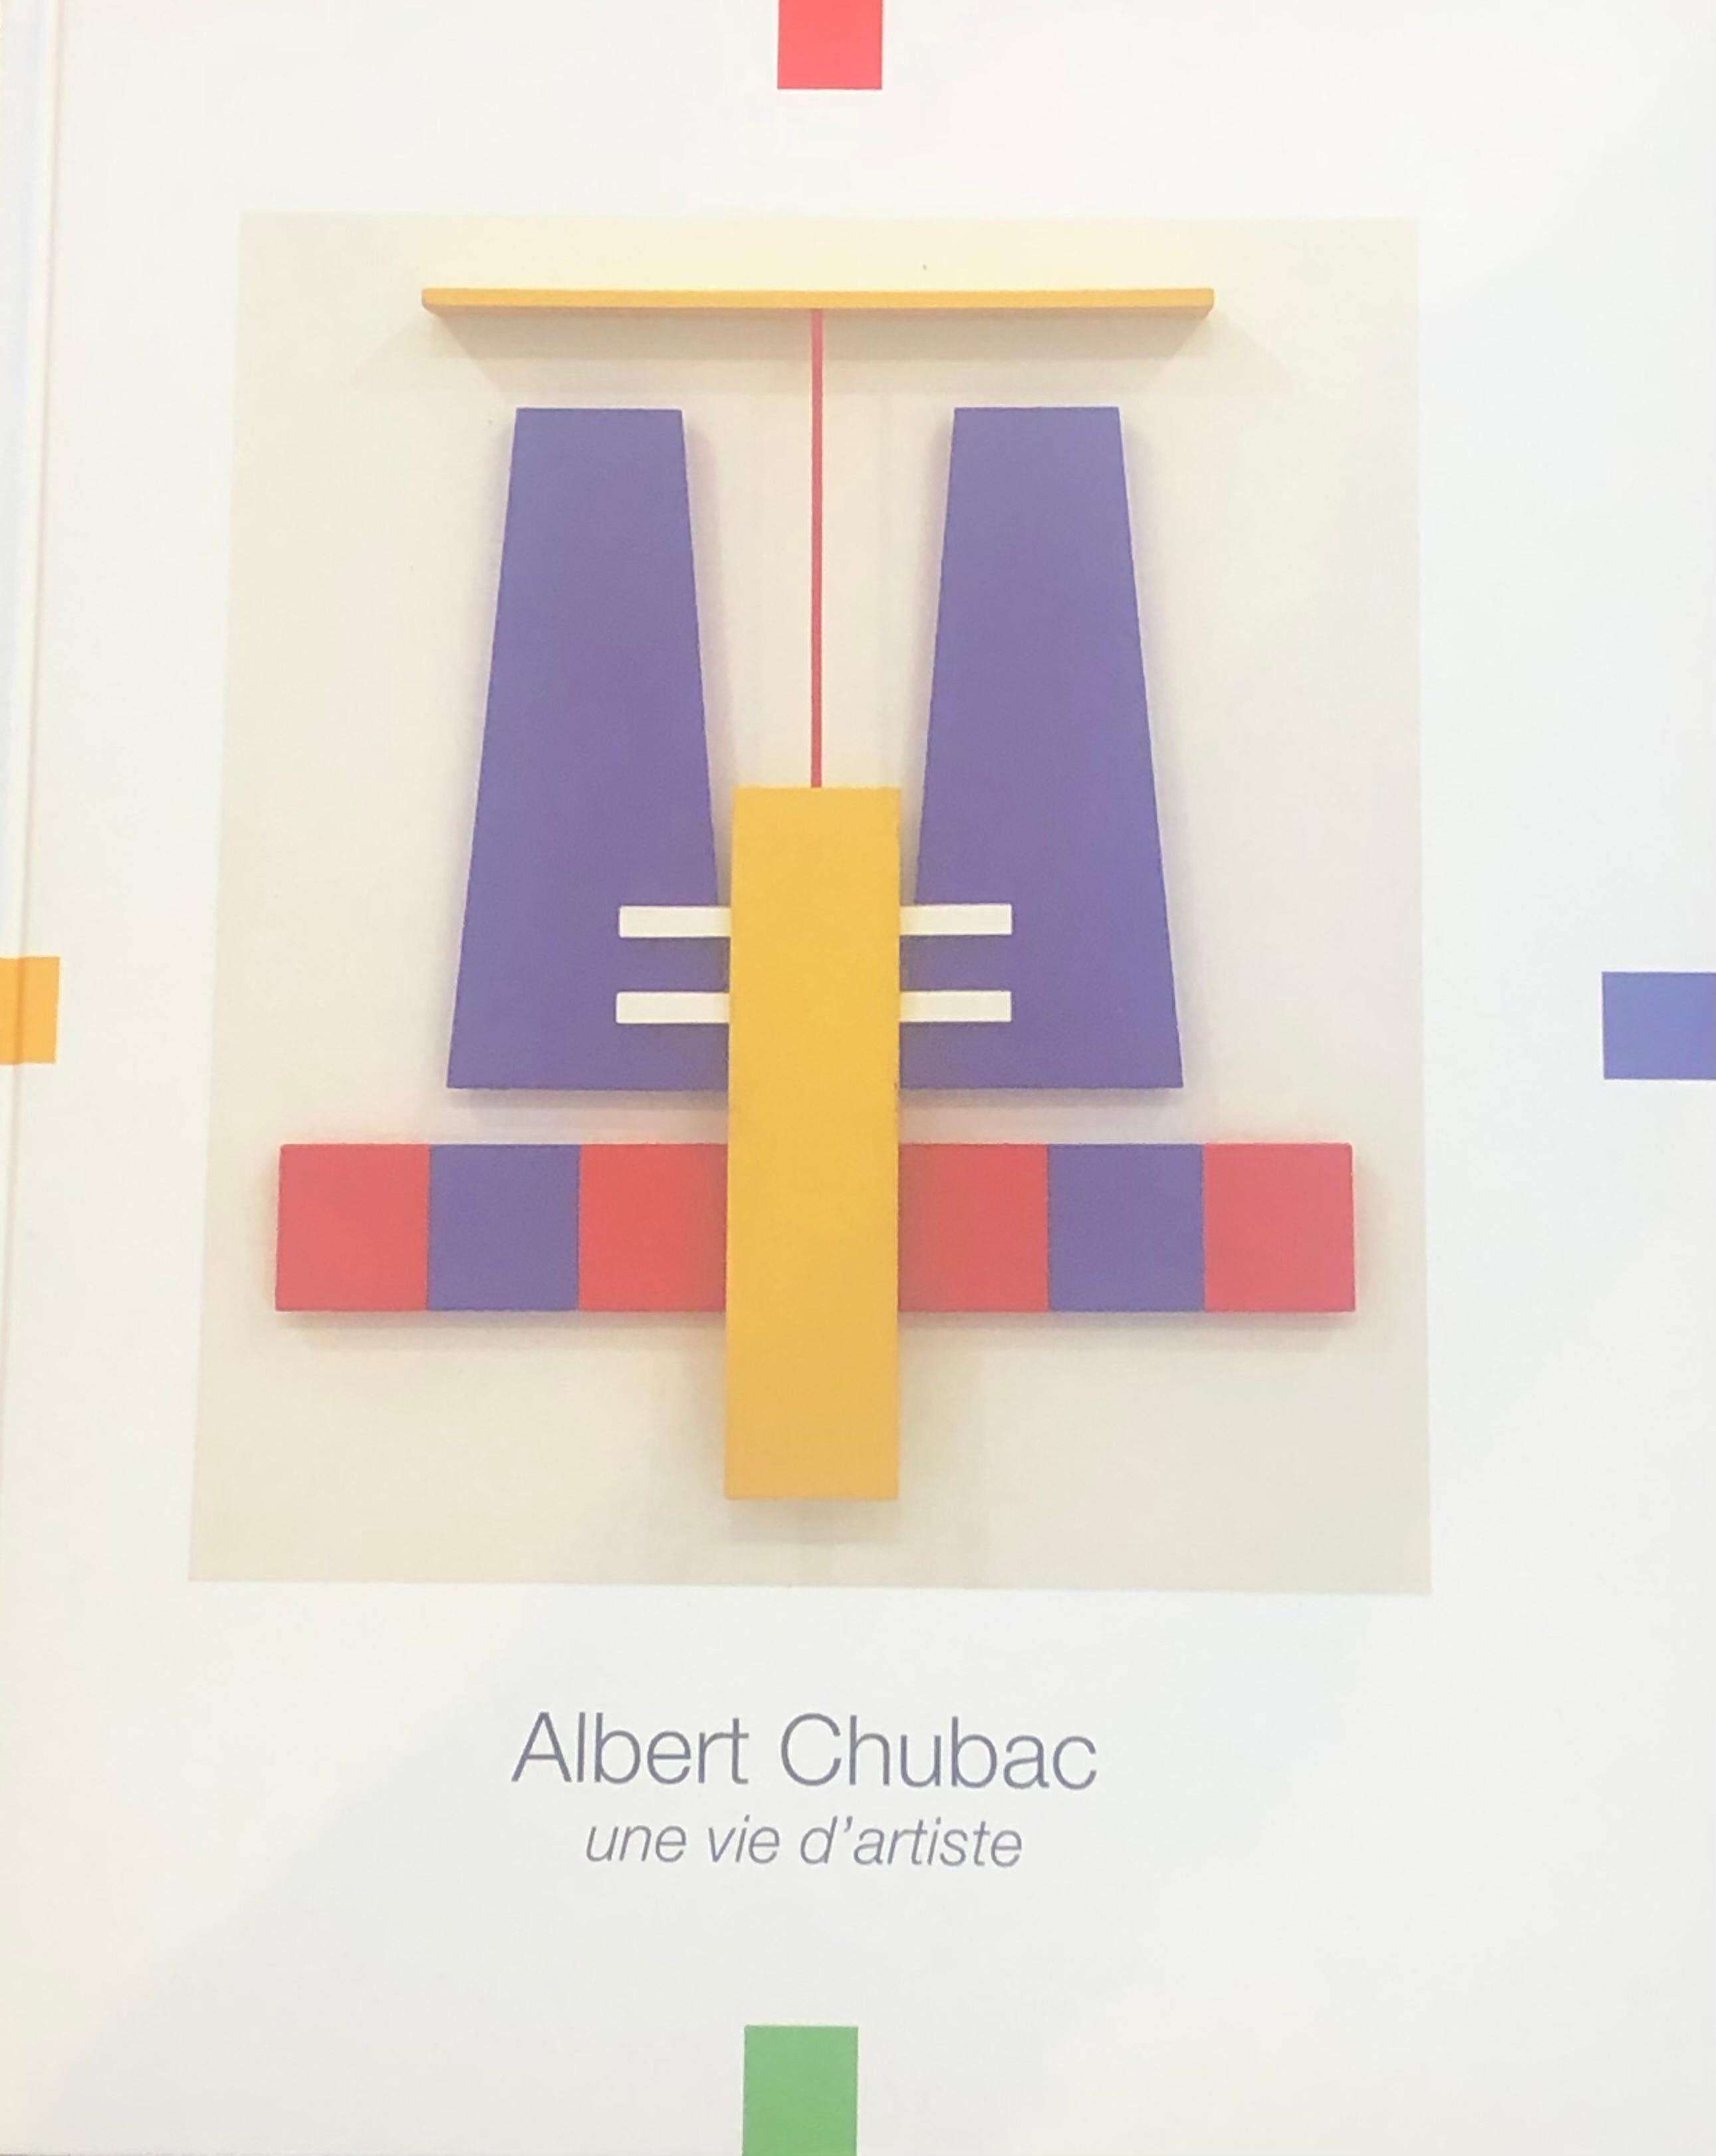 Albert Chubac, Painting, Mixed-Media, circa 1965, France 3